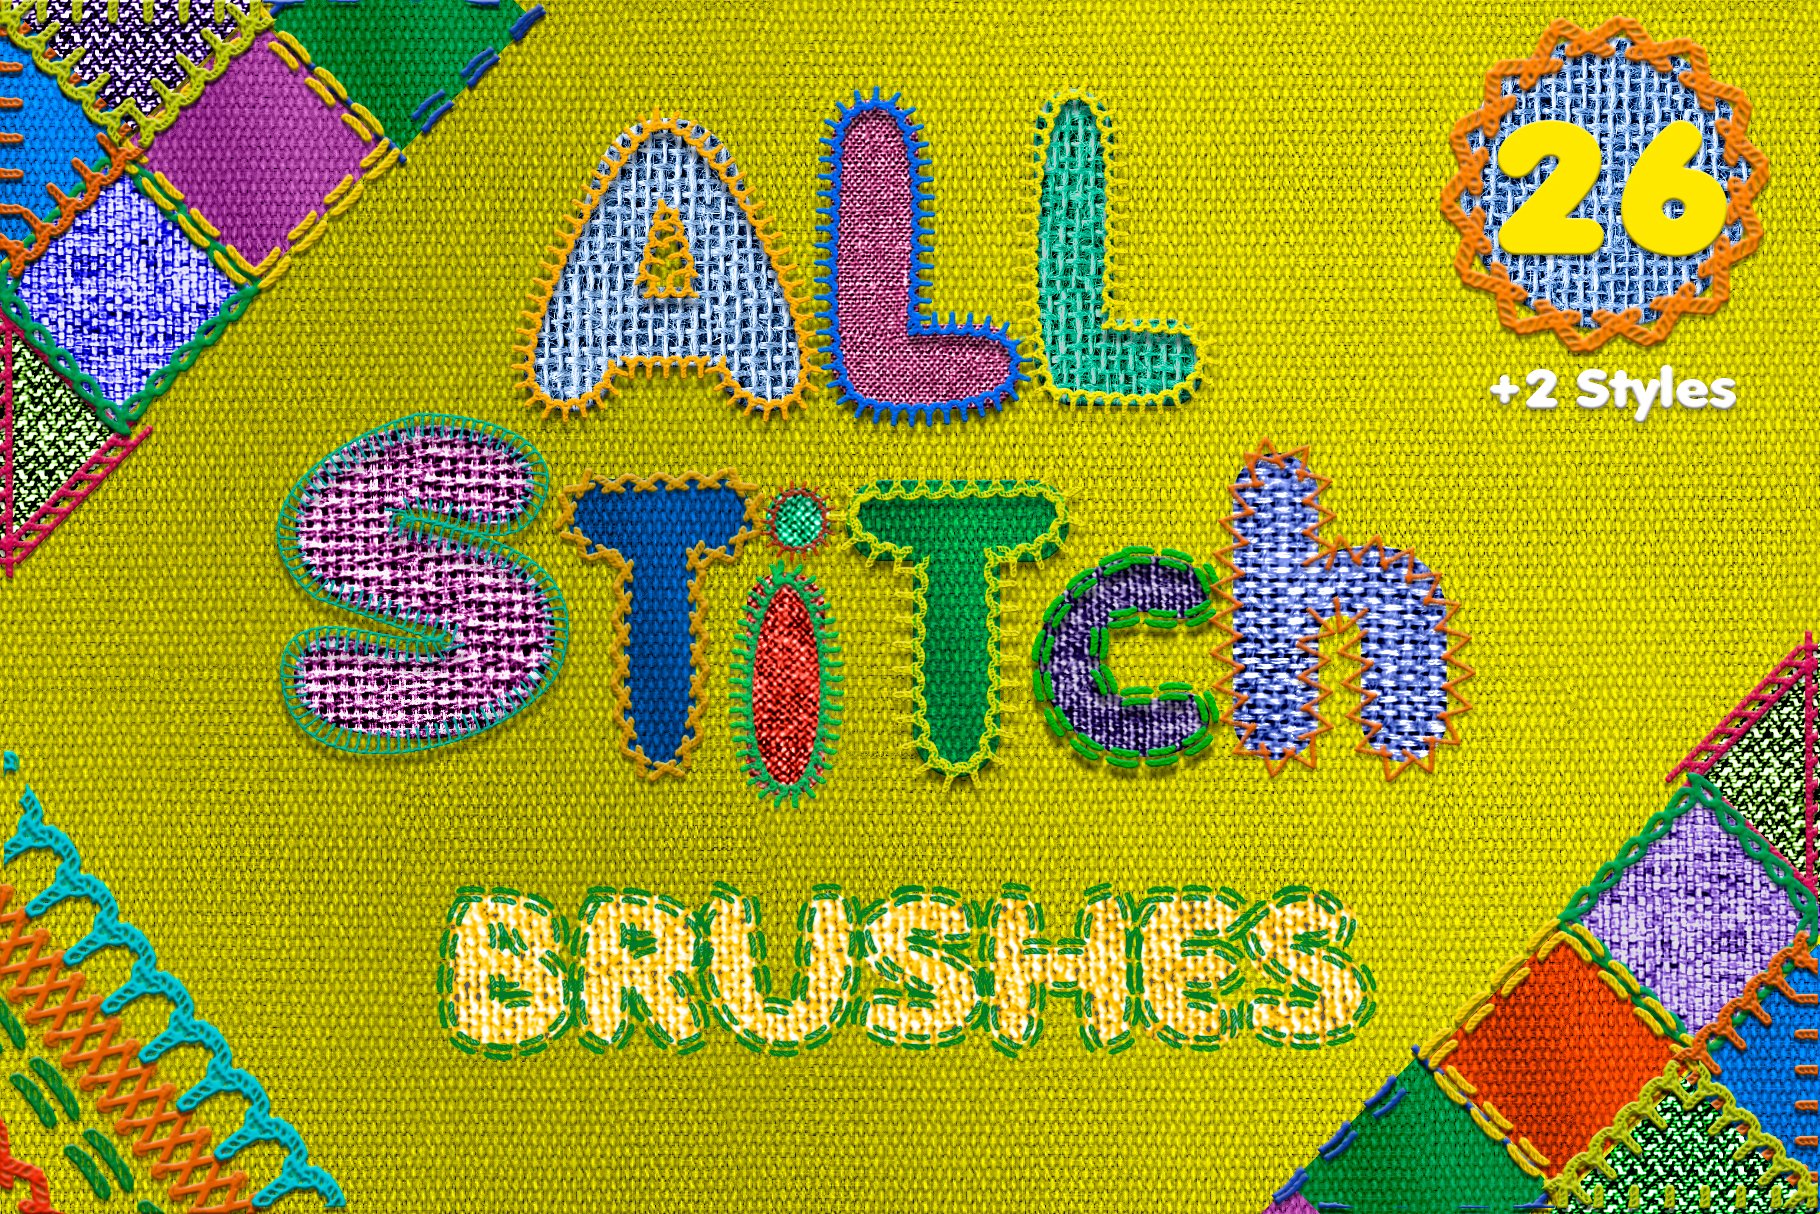 Stitch Brushes BIG SETcover image.